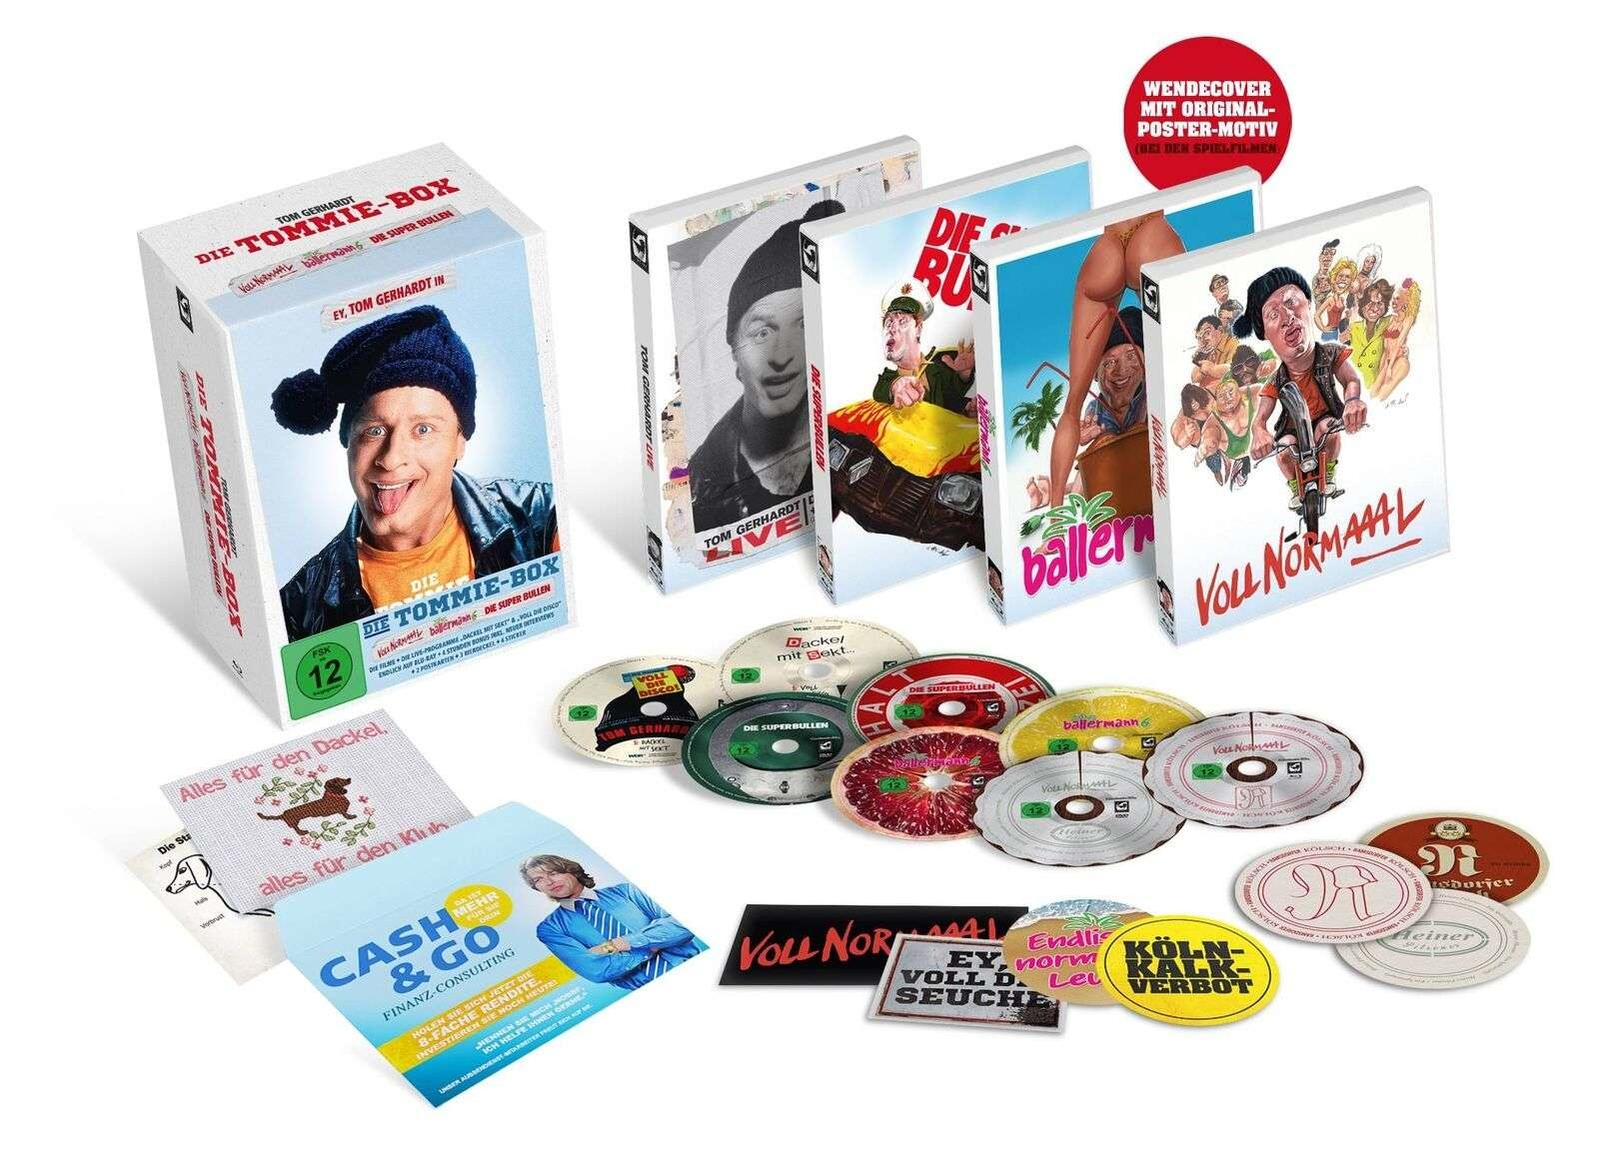 Tom Gerhardt: Sekt, Voll Disco) DVD Die Dackel mit Blu-ray 6, normaaal, Die die + (Voll Ballermann Superbullen, Tommie-Box